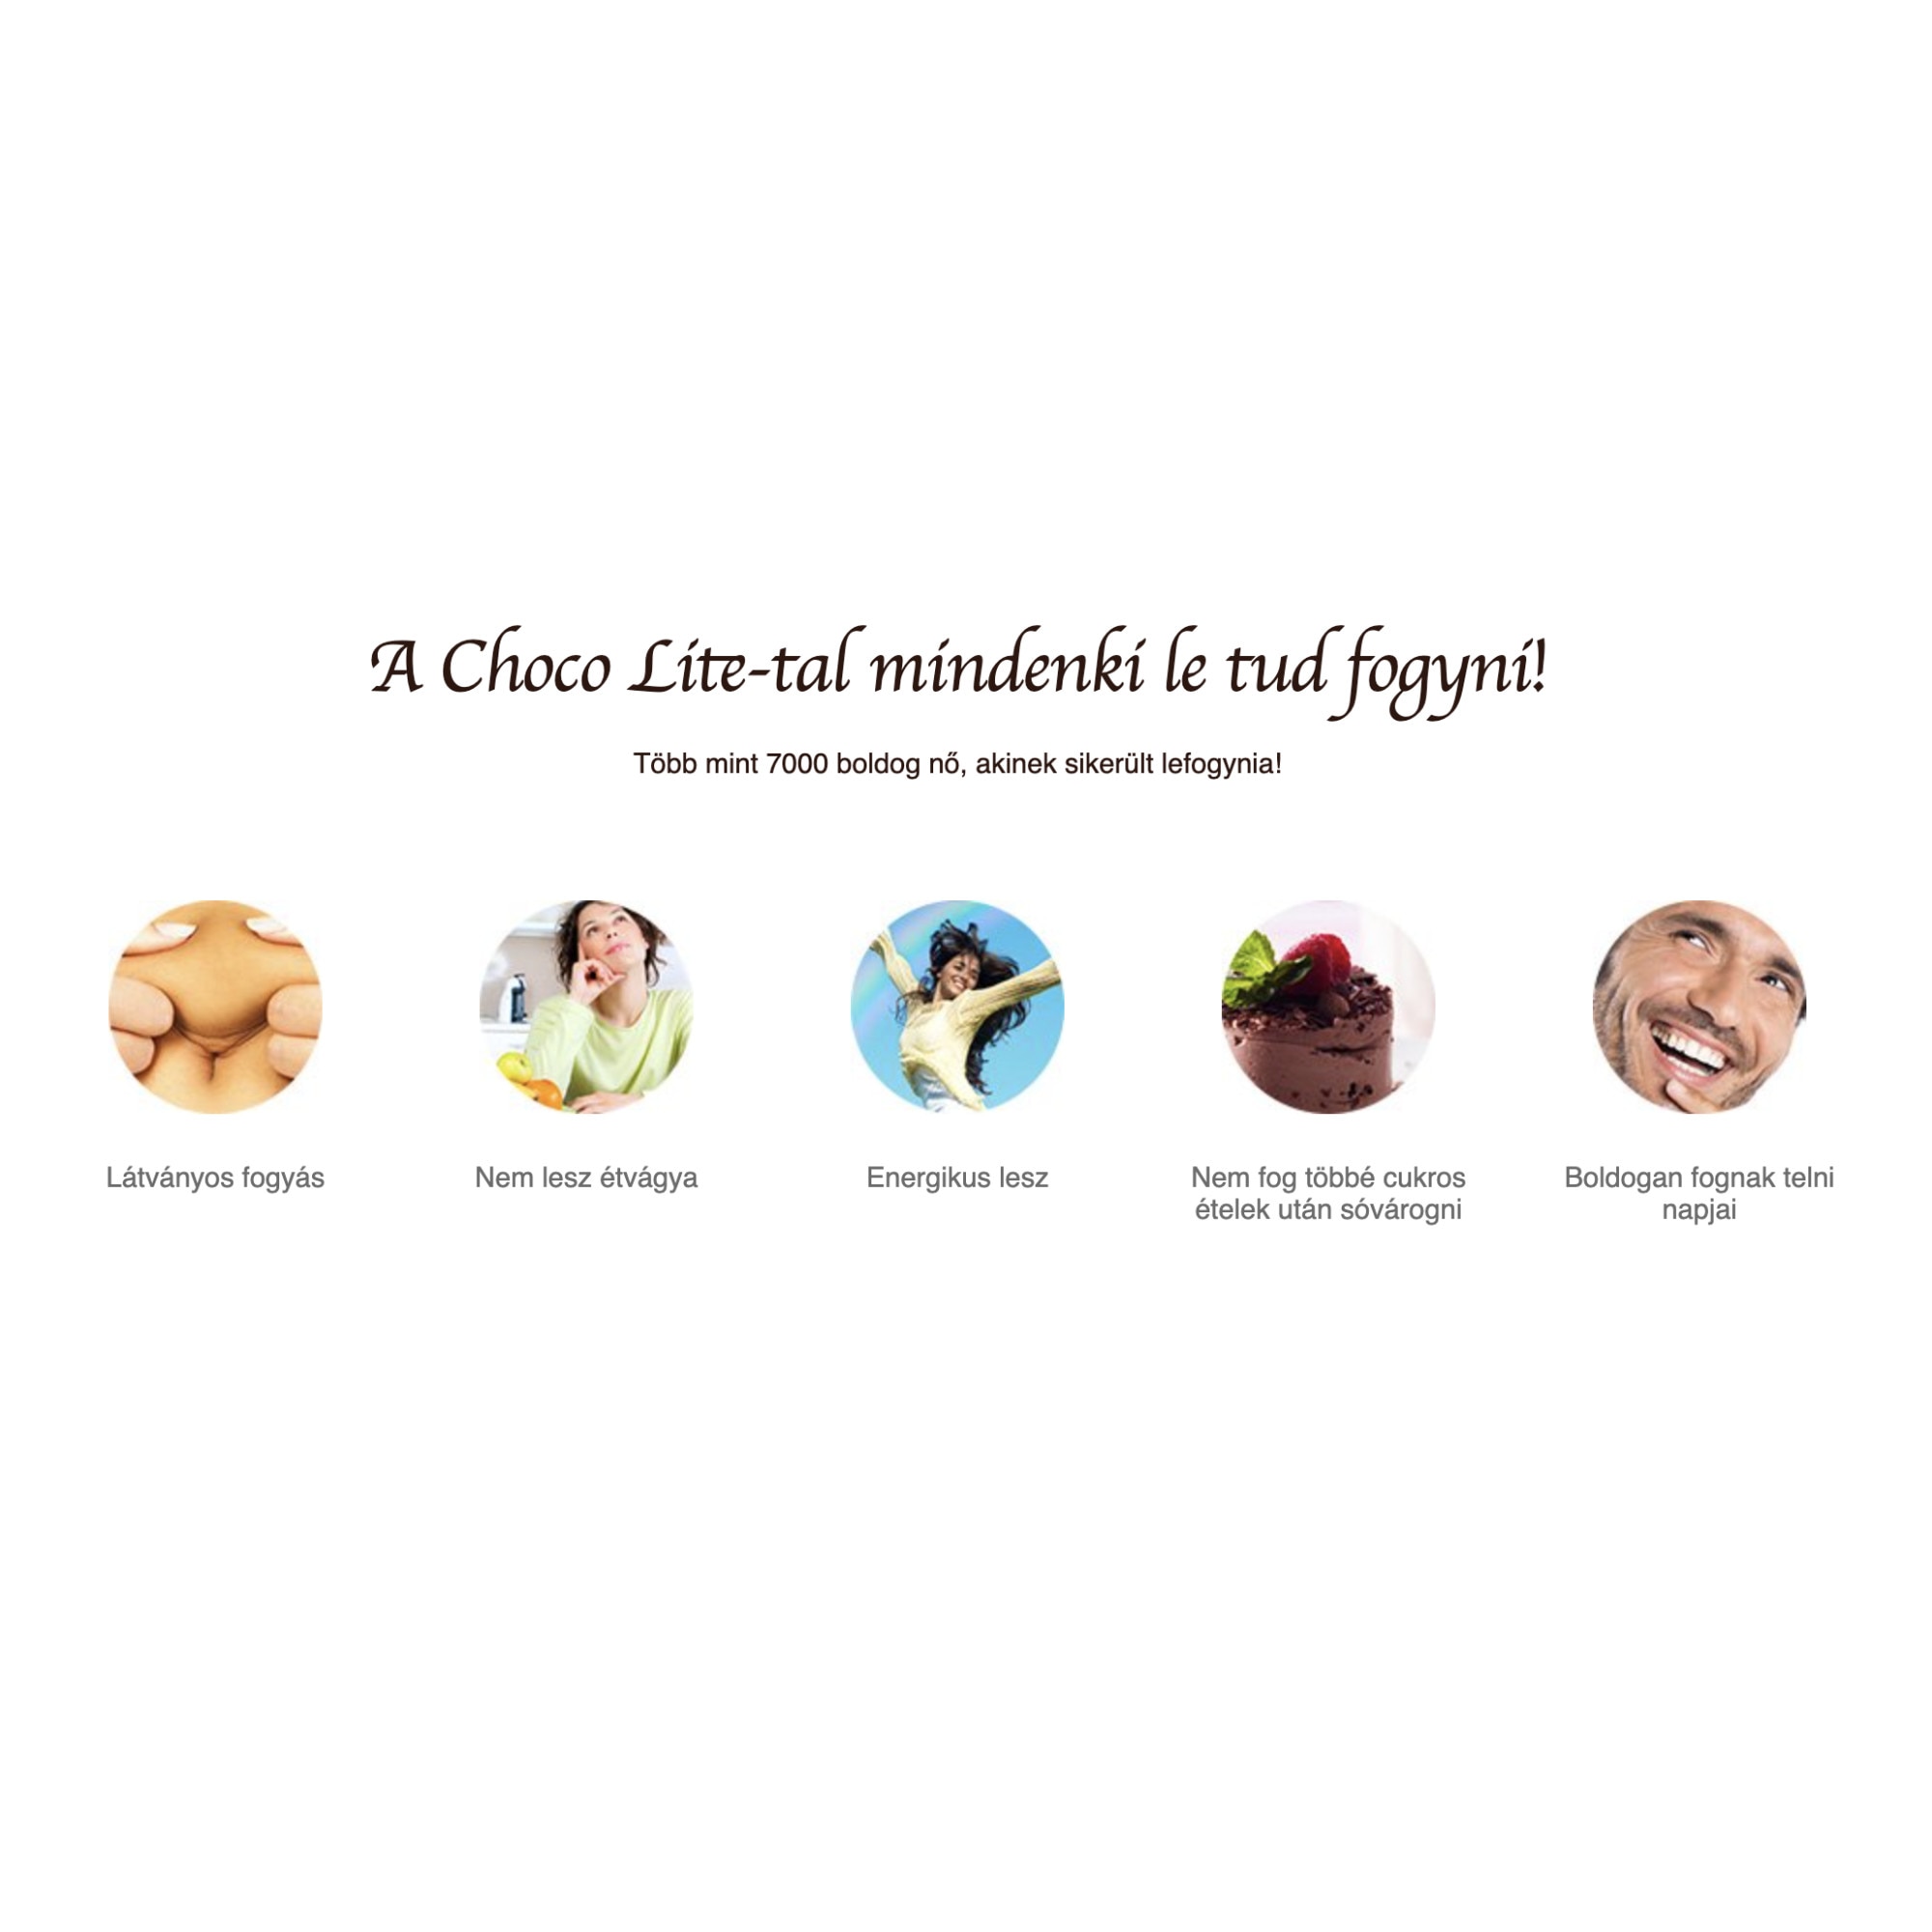 Eredeti Choco Lite – fogyás asszisztens! Mire jó a diéta Choco Lite fogyáshoz?